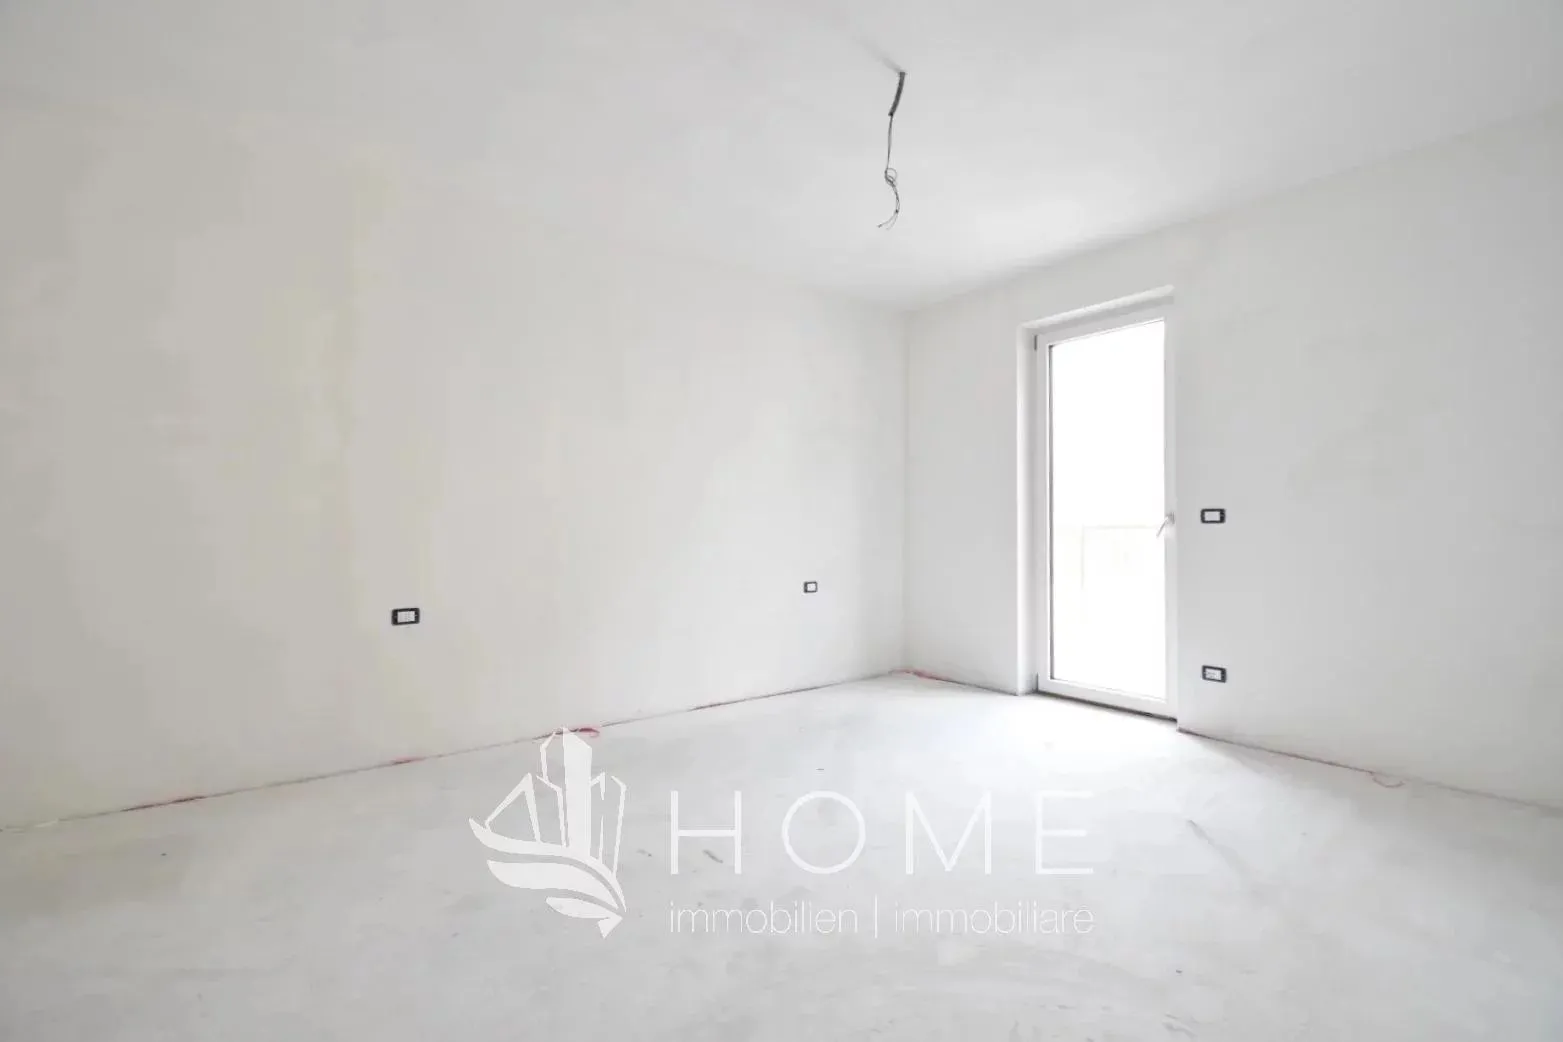 Immagine per Appartamento in vendita a Egna via Filanda